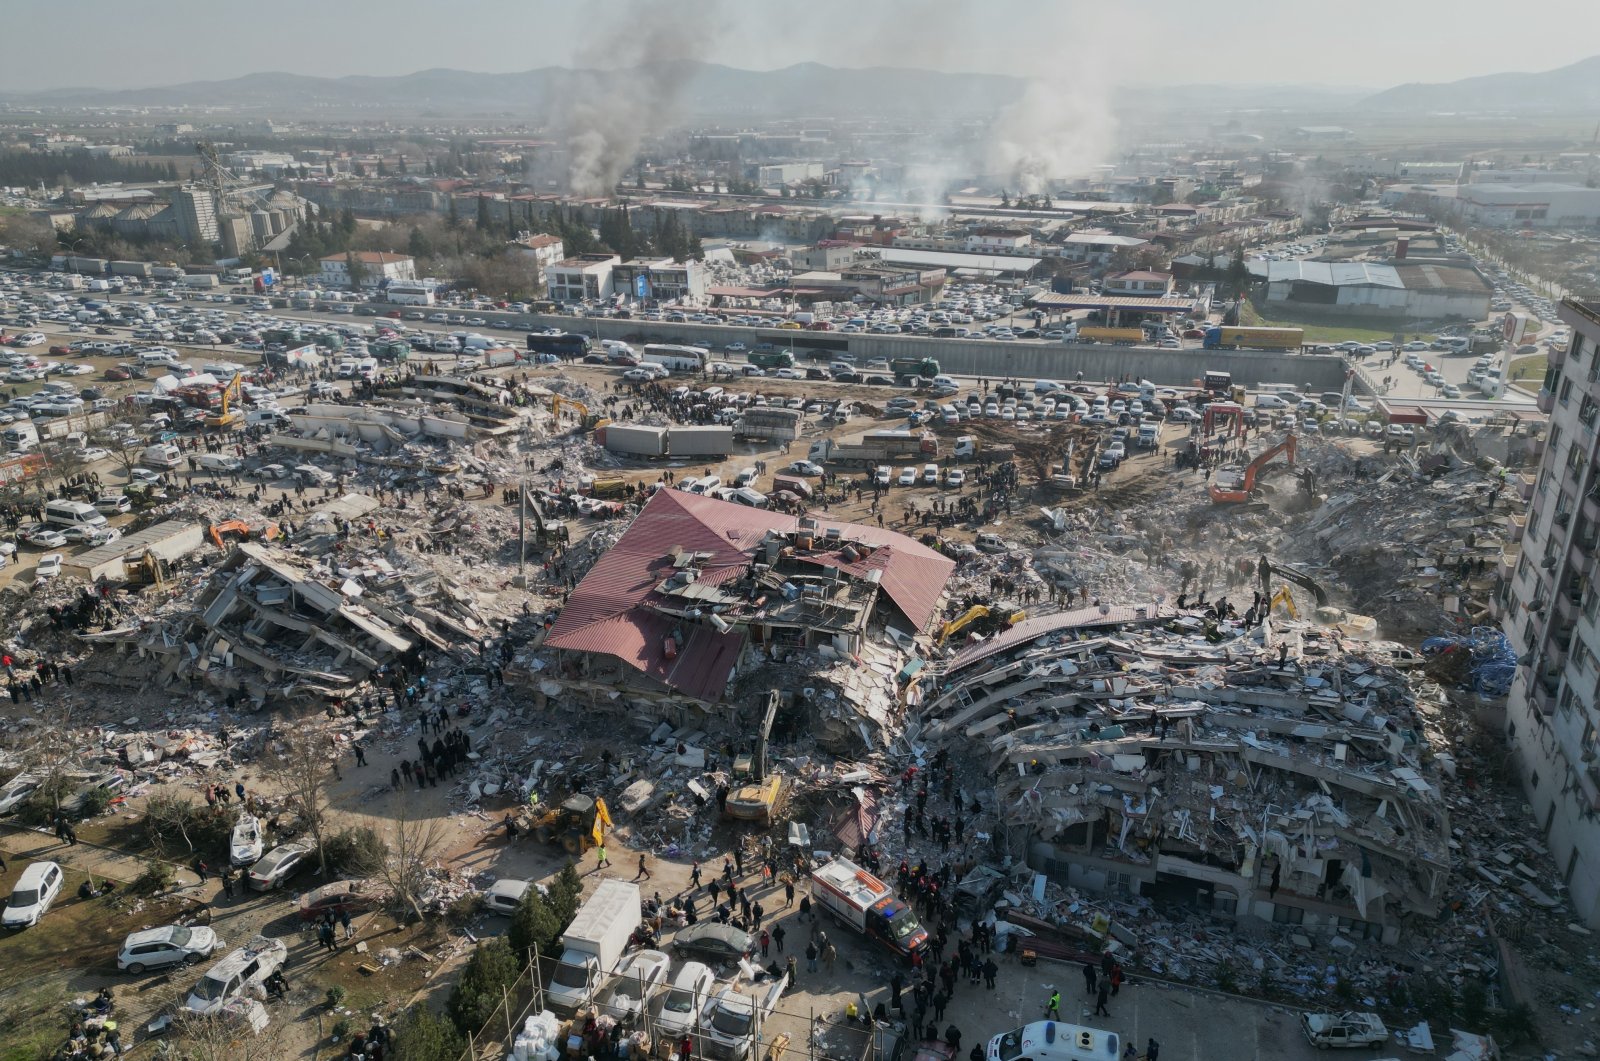 Korban tewas akibat gempa bumi Türkiye melampaui 17.600